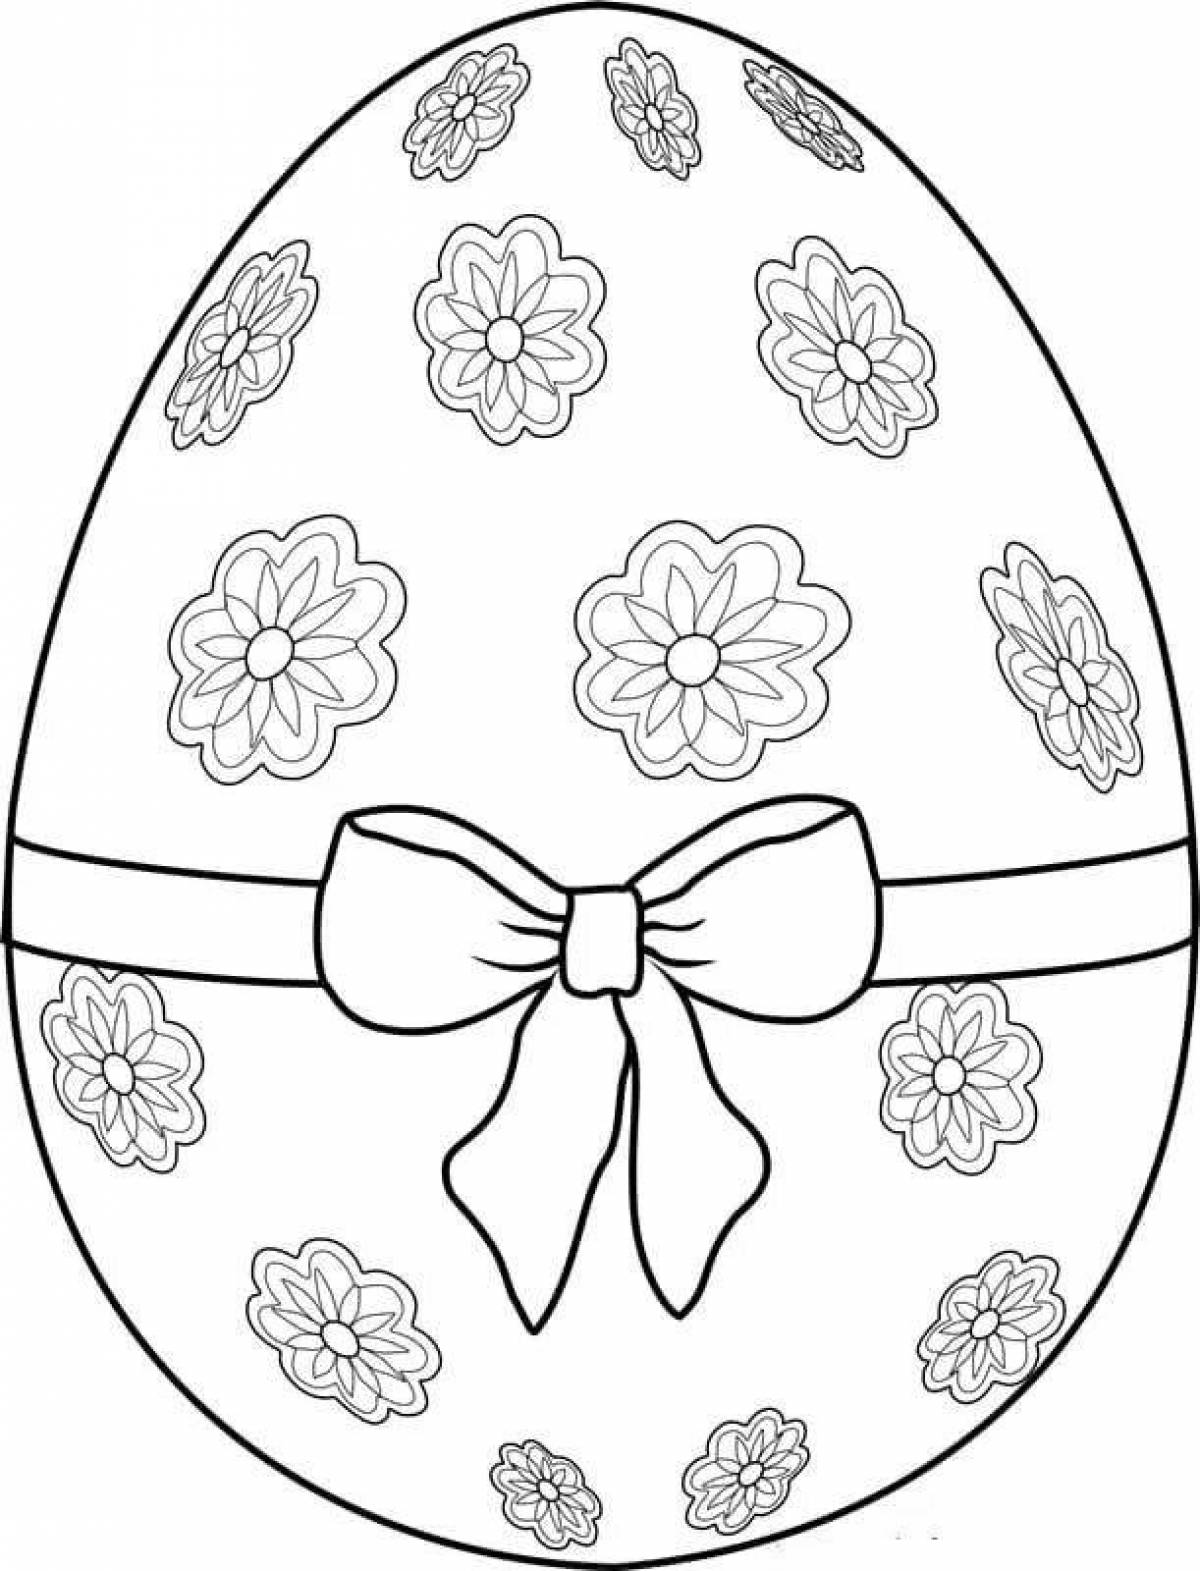 Распечатать раскраску яйца. Пасхальное яйцо раскраска. Раскраски пасочных яиц. Яйца на Пасху раскраска. Пасхальное яйцо раскраска для детей.